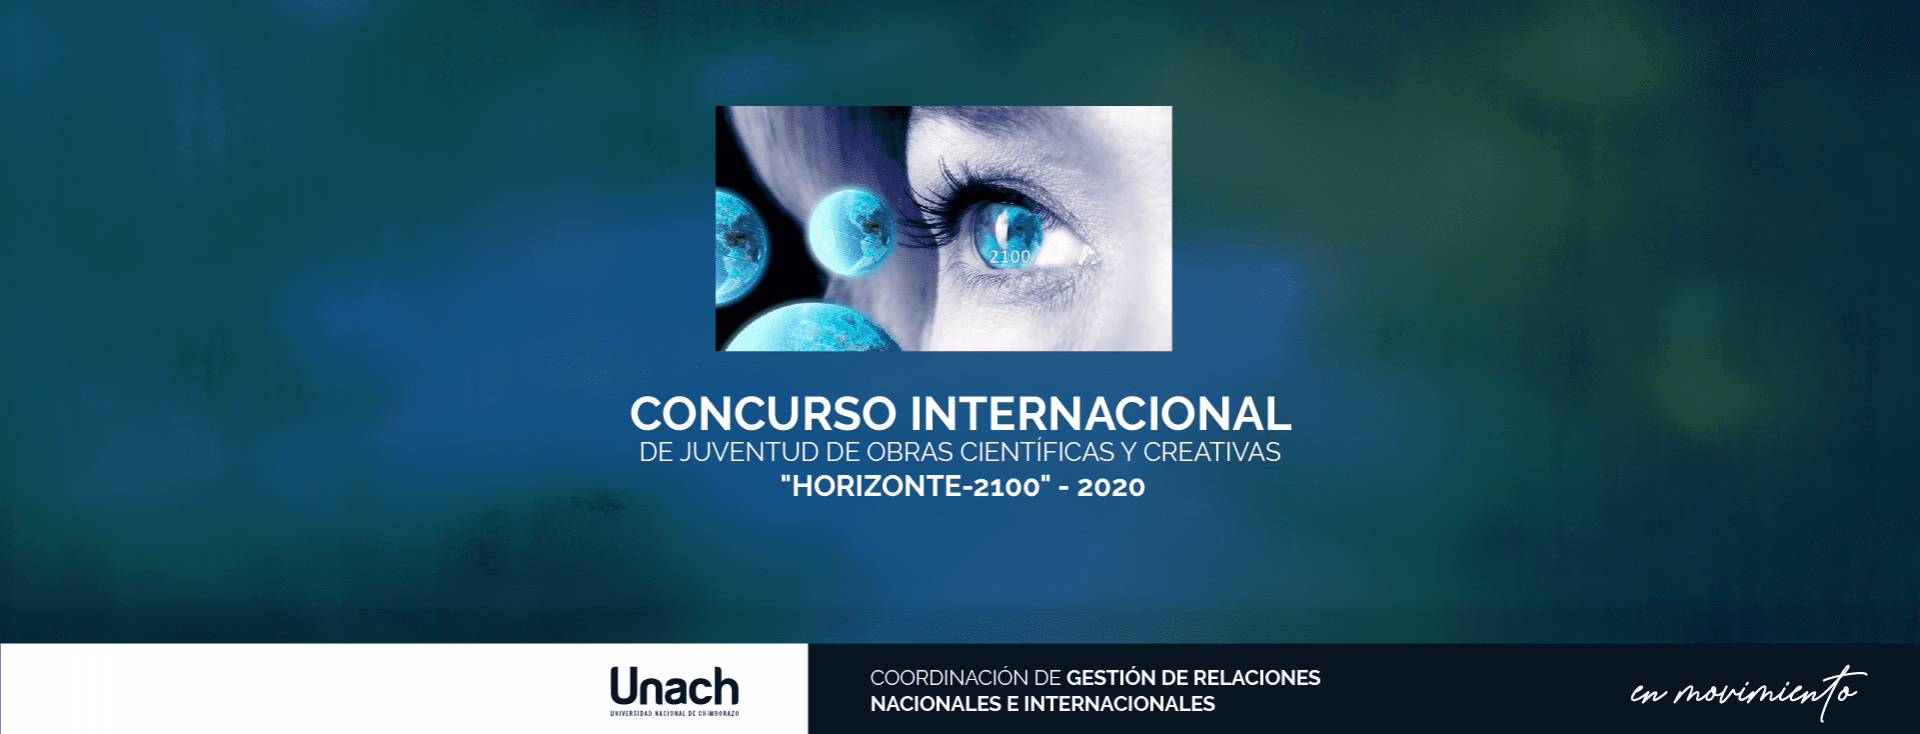 CONCURSO INTERNACIONAL DE JUVENTUD DE OBRAS CIENTÍFICAS Y CREATIVAS "HORIZONTE-2100" - 2020